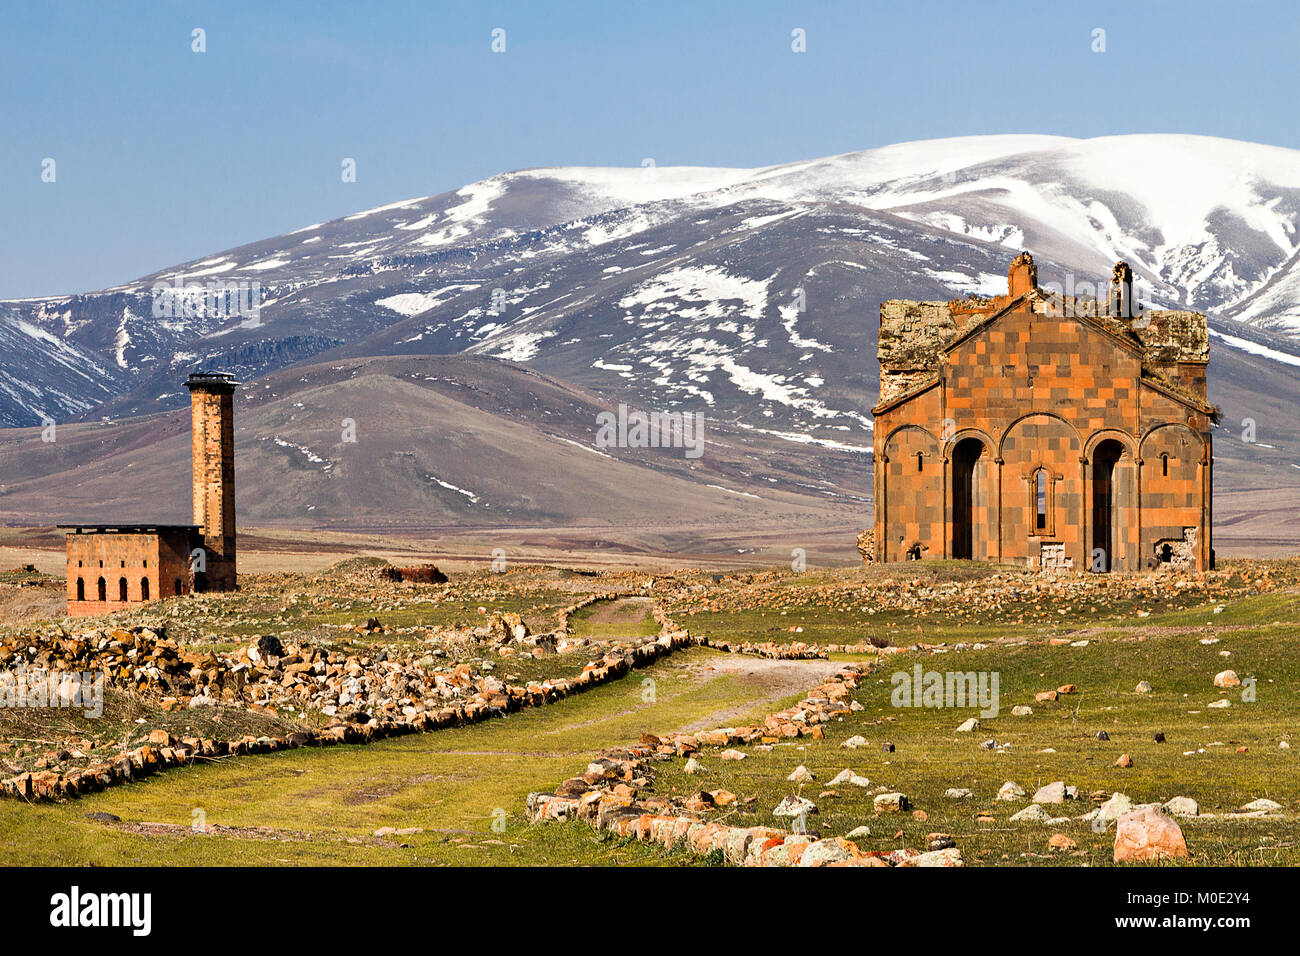 Abbandonata la cattedrale armena e una moschea turca in rovine dell'antica capitale di Bagradit Regno armeno, Ani, in Kars, Turchia. Foto Stock